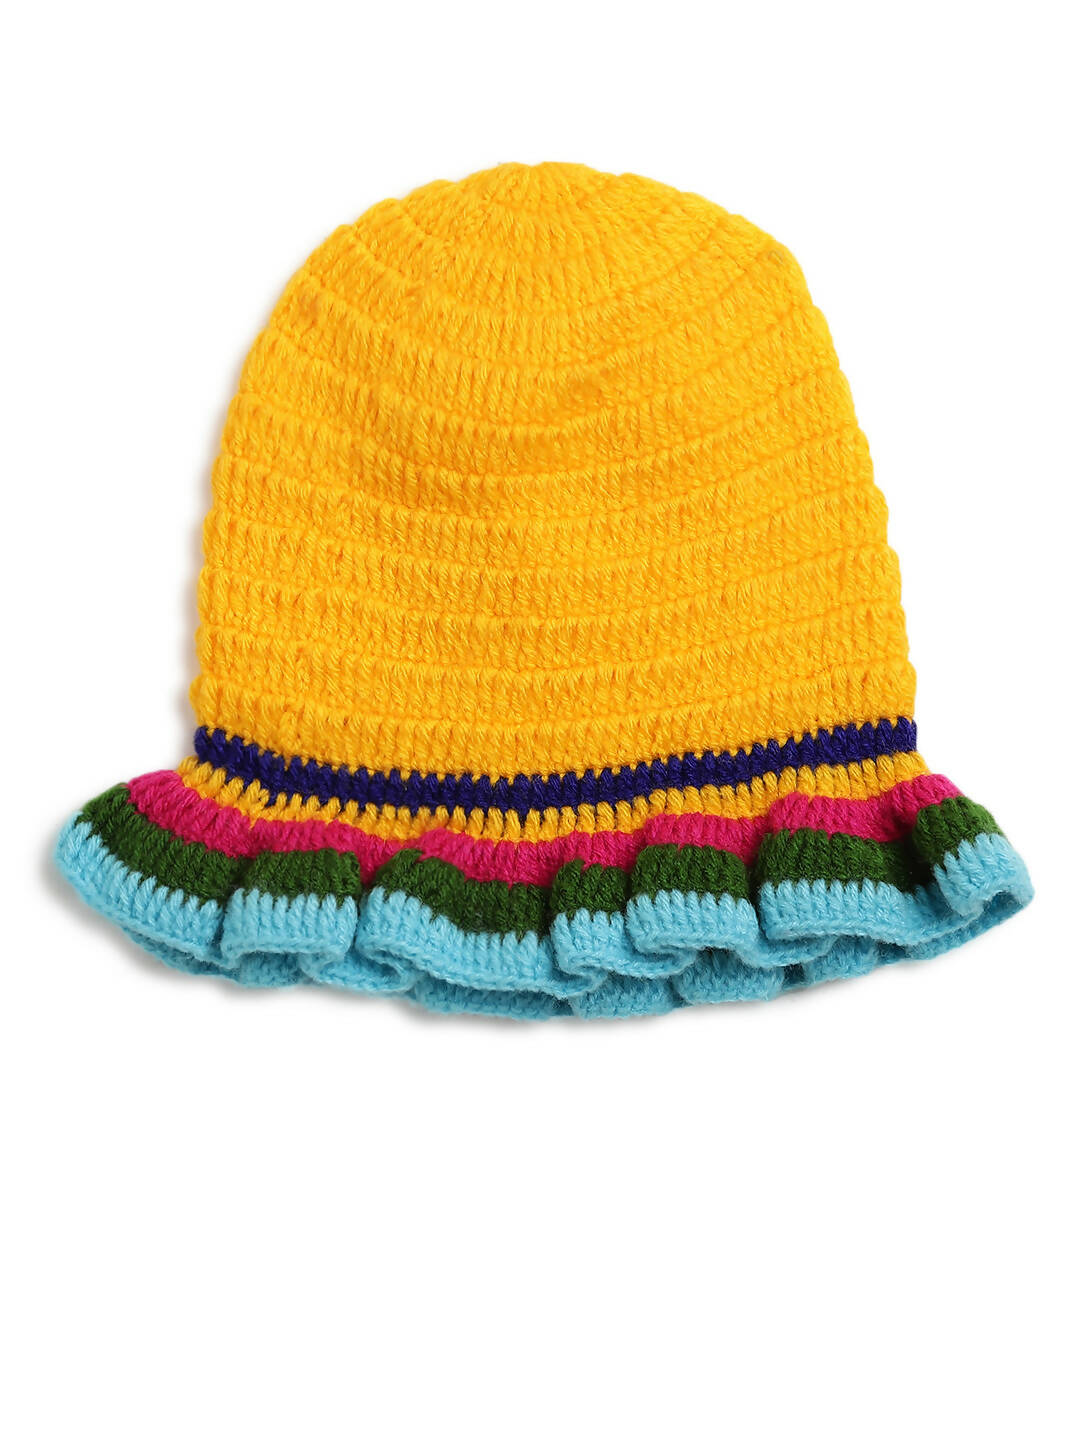 ChutPut Hand knitted Crochet HoneyBee Wool Dress - Yellow - Distacart